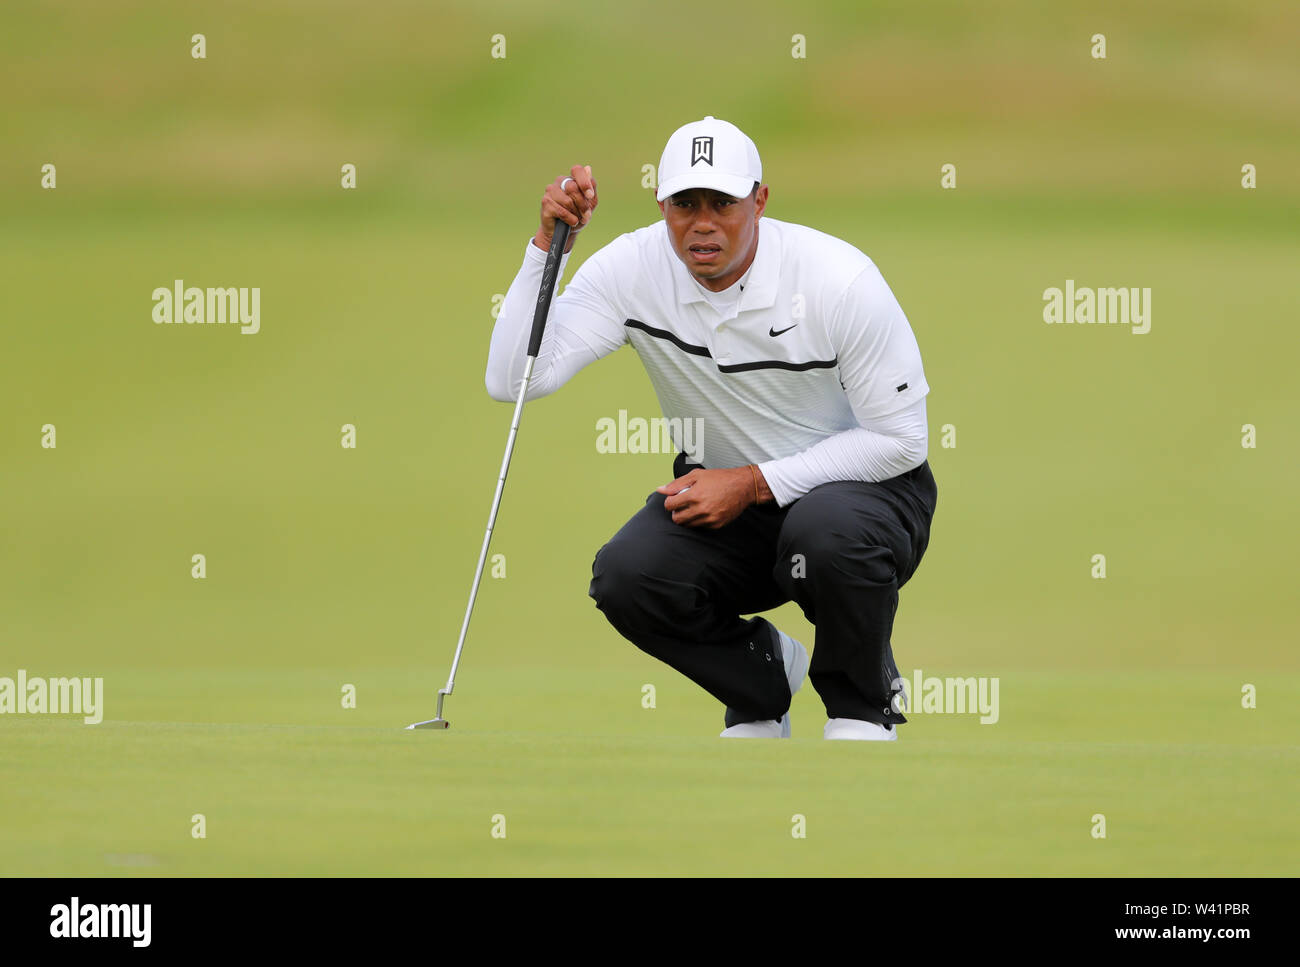 USA's Tiger Woods sur le premier vert au cours de la deuxième journée de l'Open Championship 2019 au Club de golf Royal Portrush. Banque D'Images